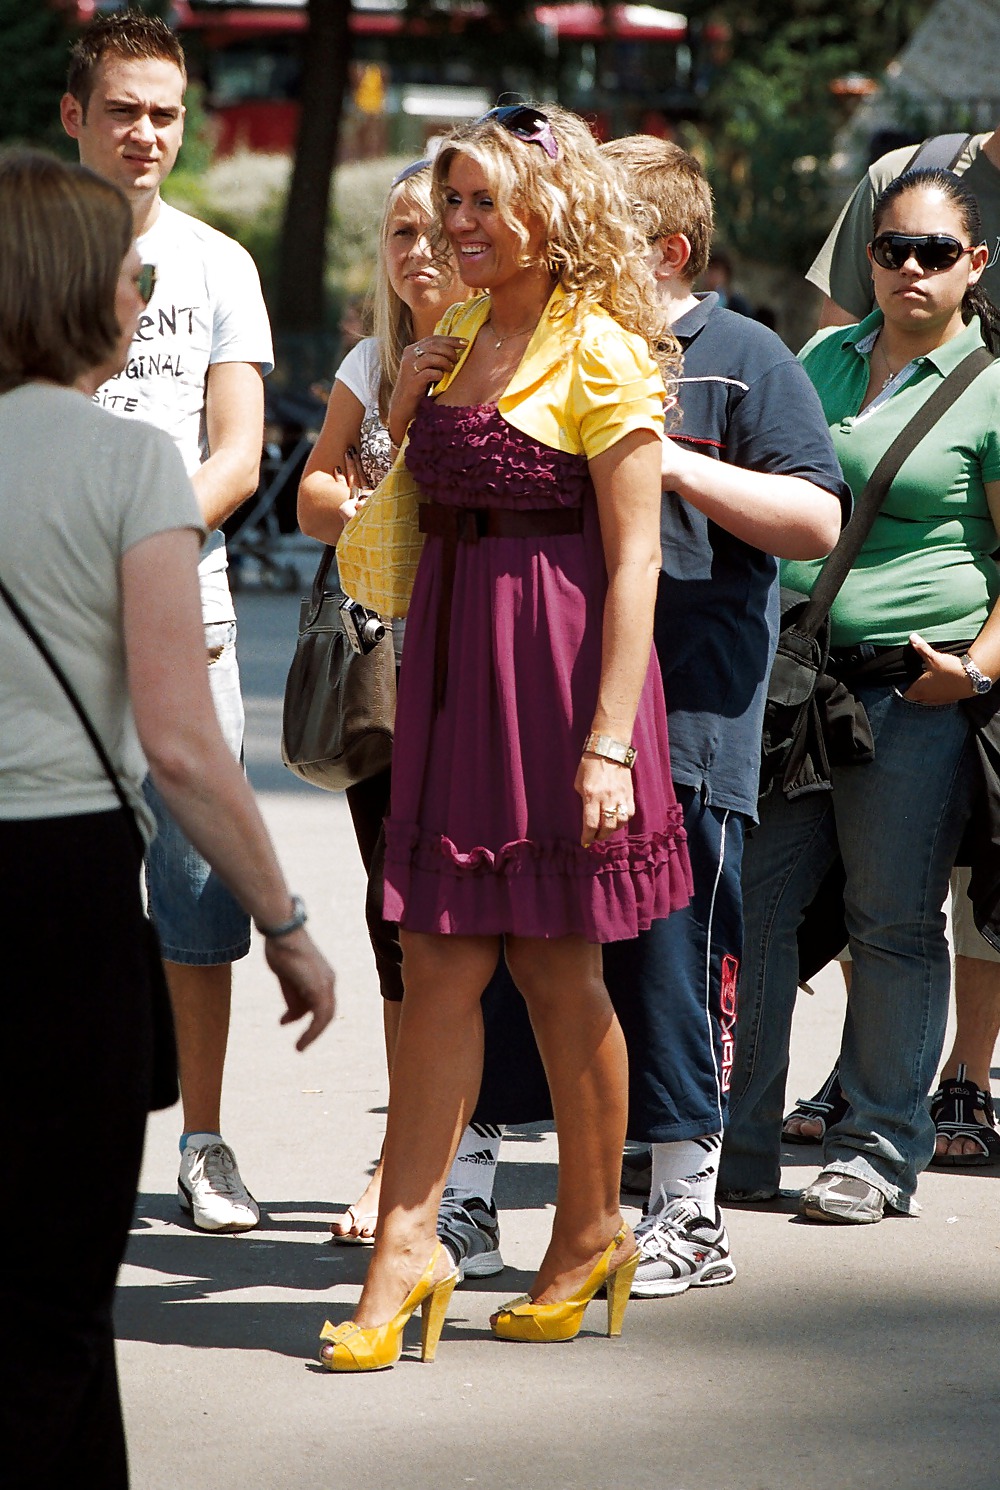 Stocking girls in public. Paris, june 2008 #35789462